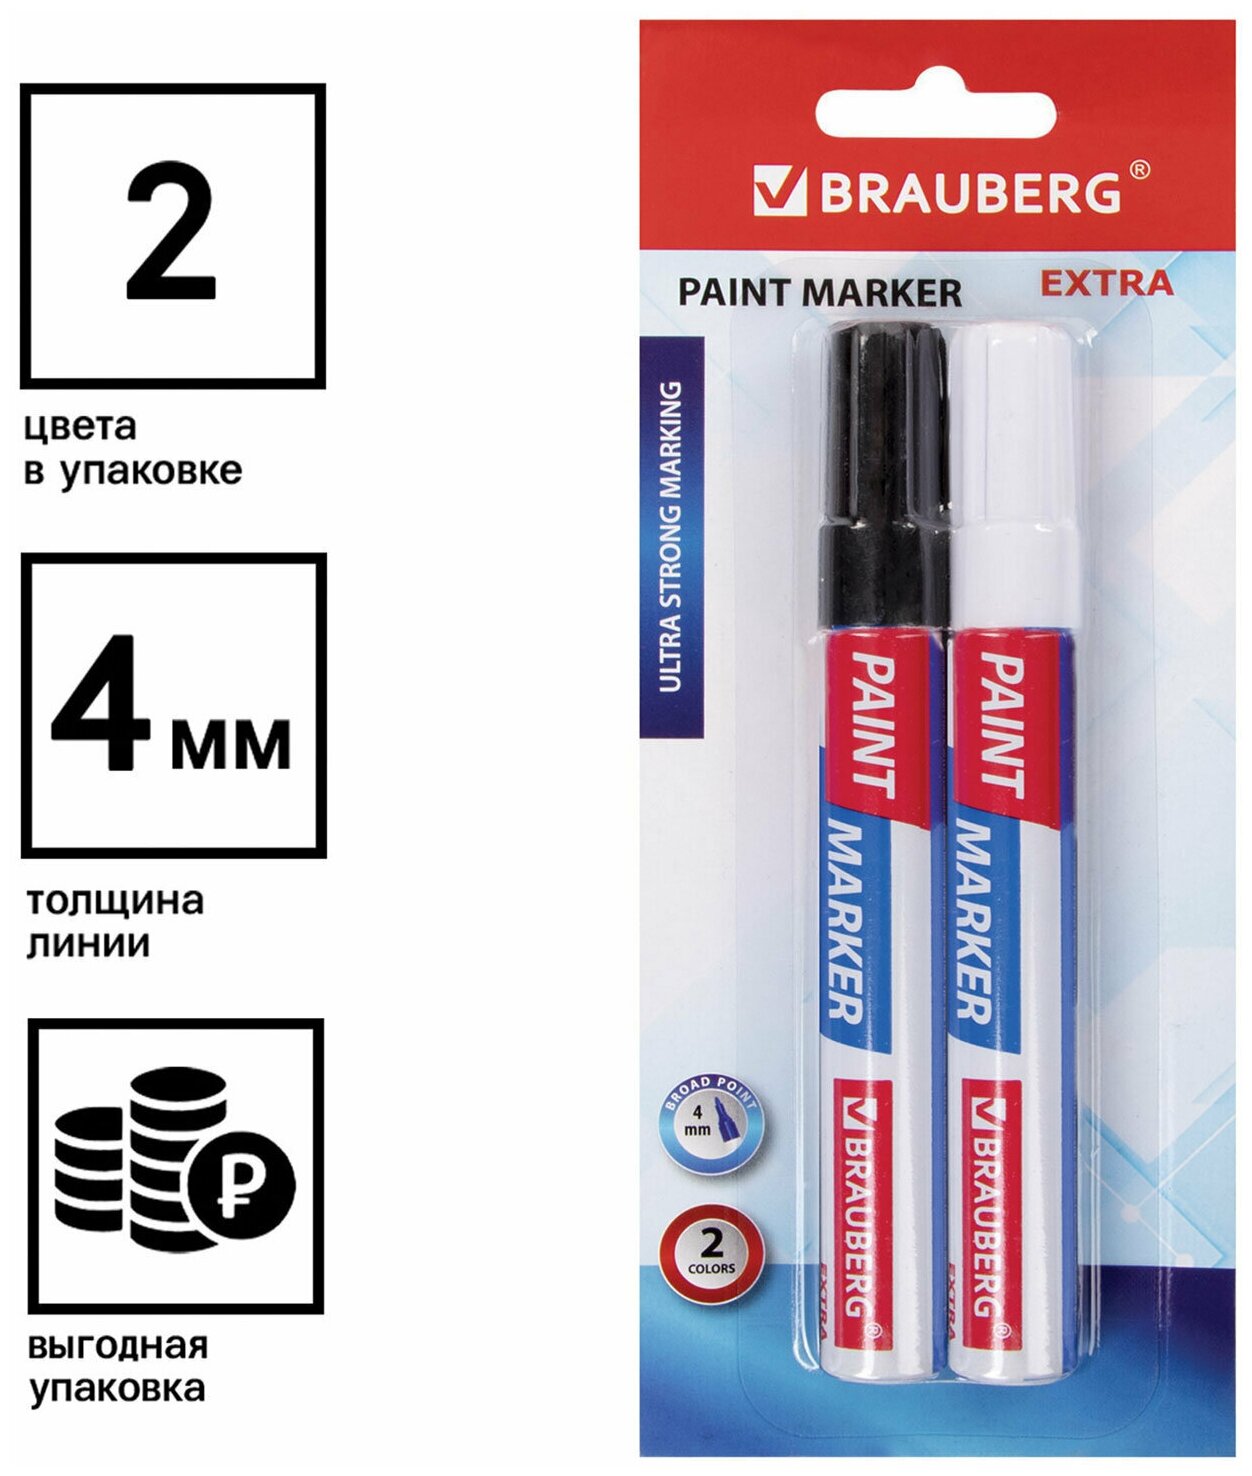 Маркер-краска лаковый EXTRA (paint marker) 4 мм набор 2 цвета белый/черный усиленная нитро-основа BRAUBERG 151998